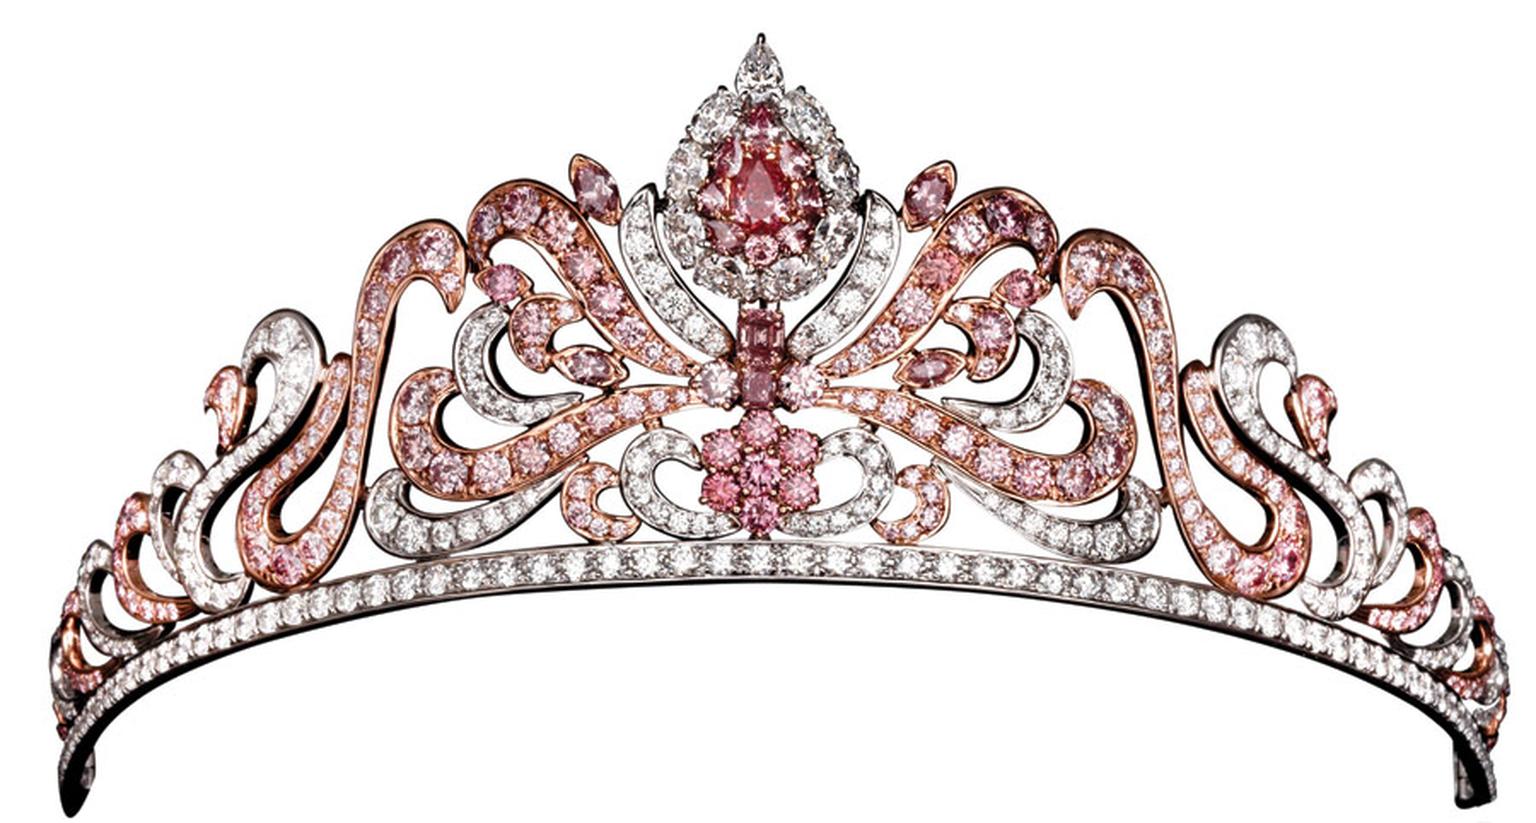 Argyle-pink-diamond-tiara.jpg